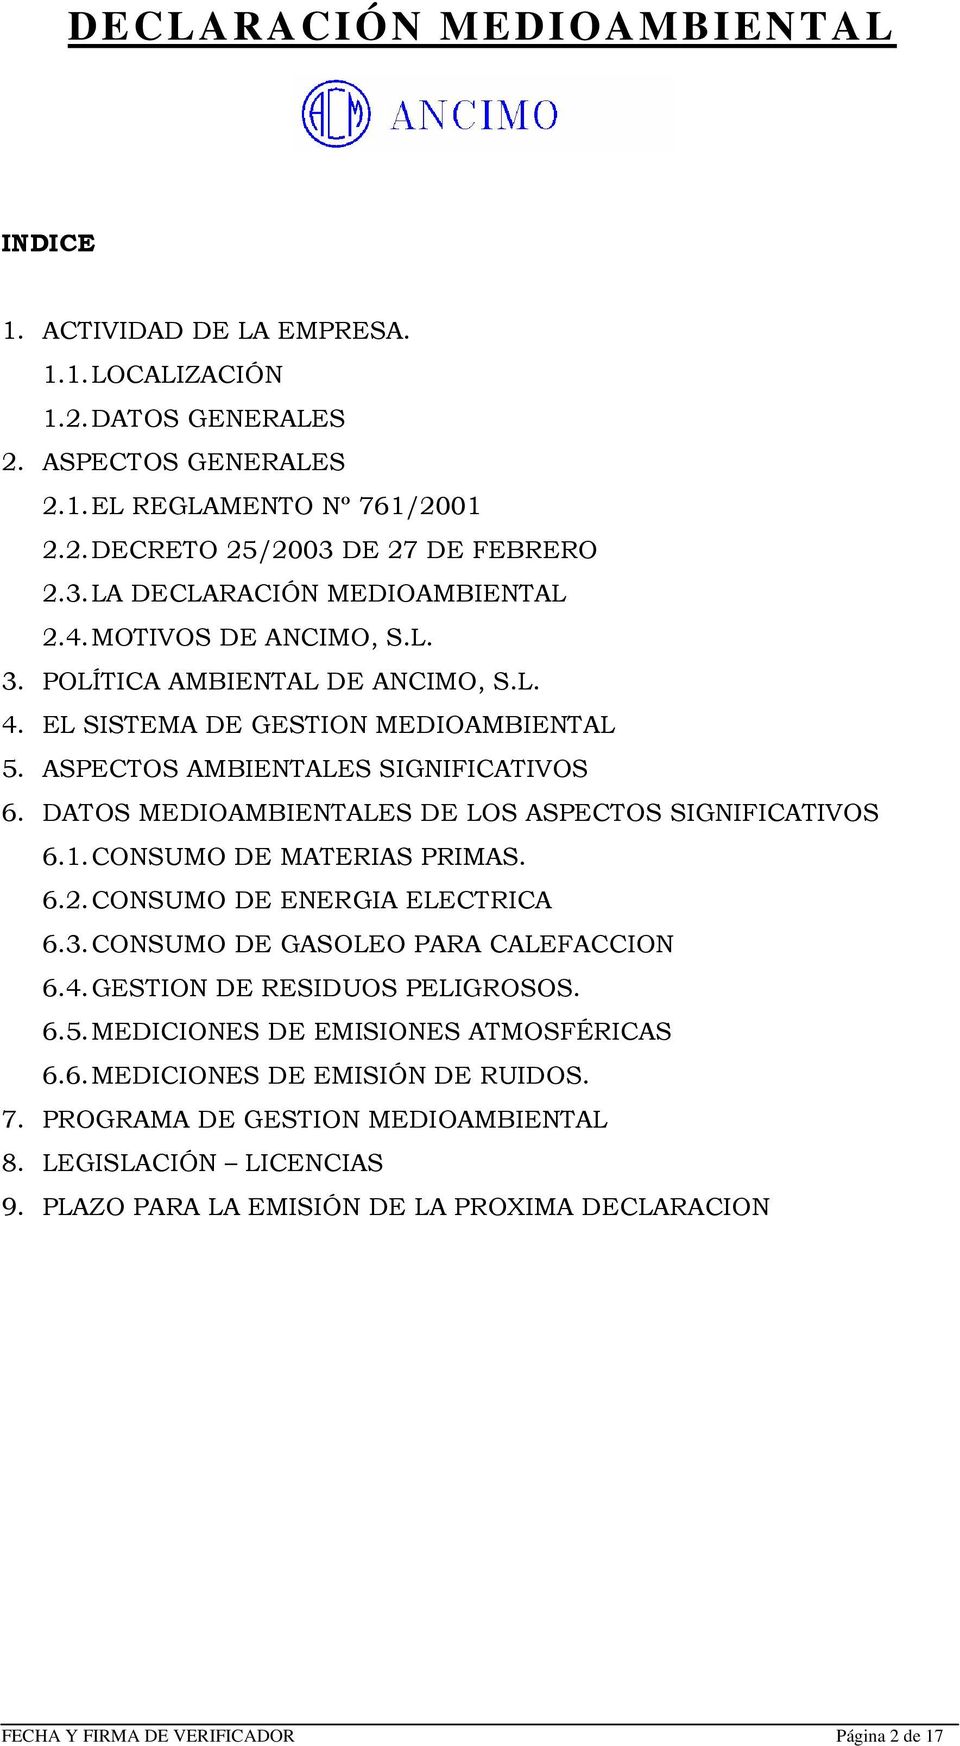 DATOS MEDIOAMBIENTALES DE LOS ASPECTOS SIGNIFICATIVOS 6.1. CONSUMO DE MATERIAS PRIMAS. 6.2. CONSUMO DE ENERGIA ELECTRICA 6.3. CONSUMO DE GASOLEO PARA CALEFACCION 6.4.